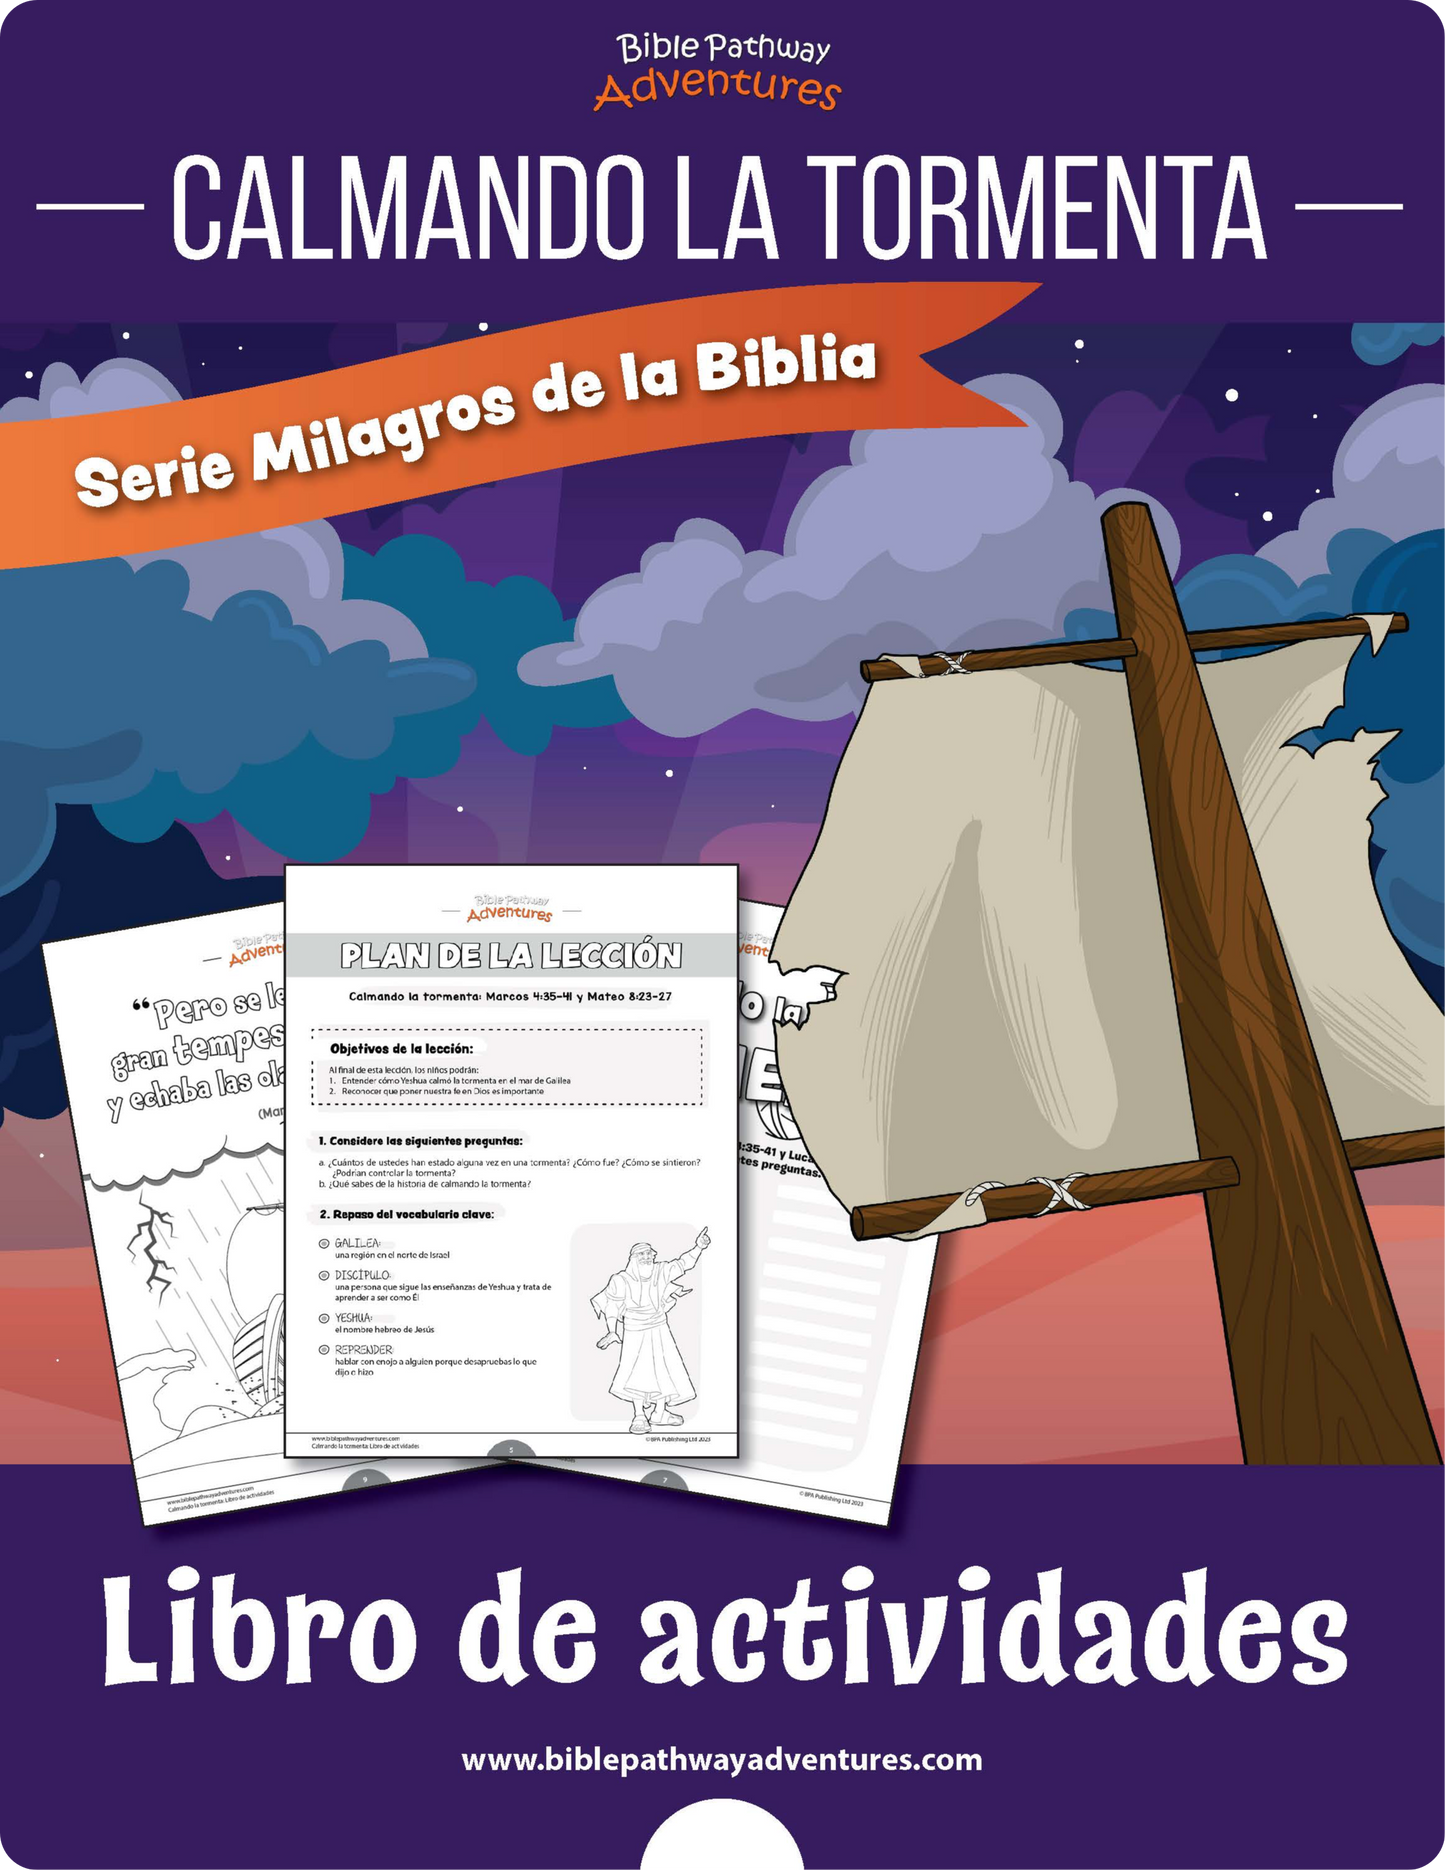 Calmando la tormenta: Libro de actividades (PDF)